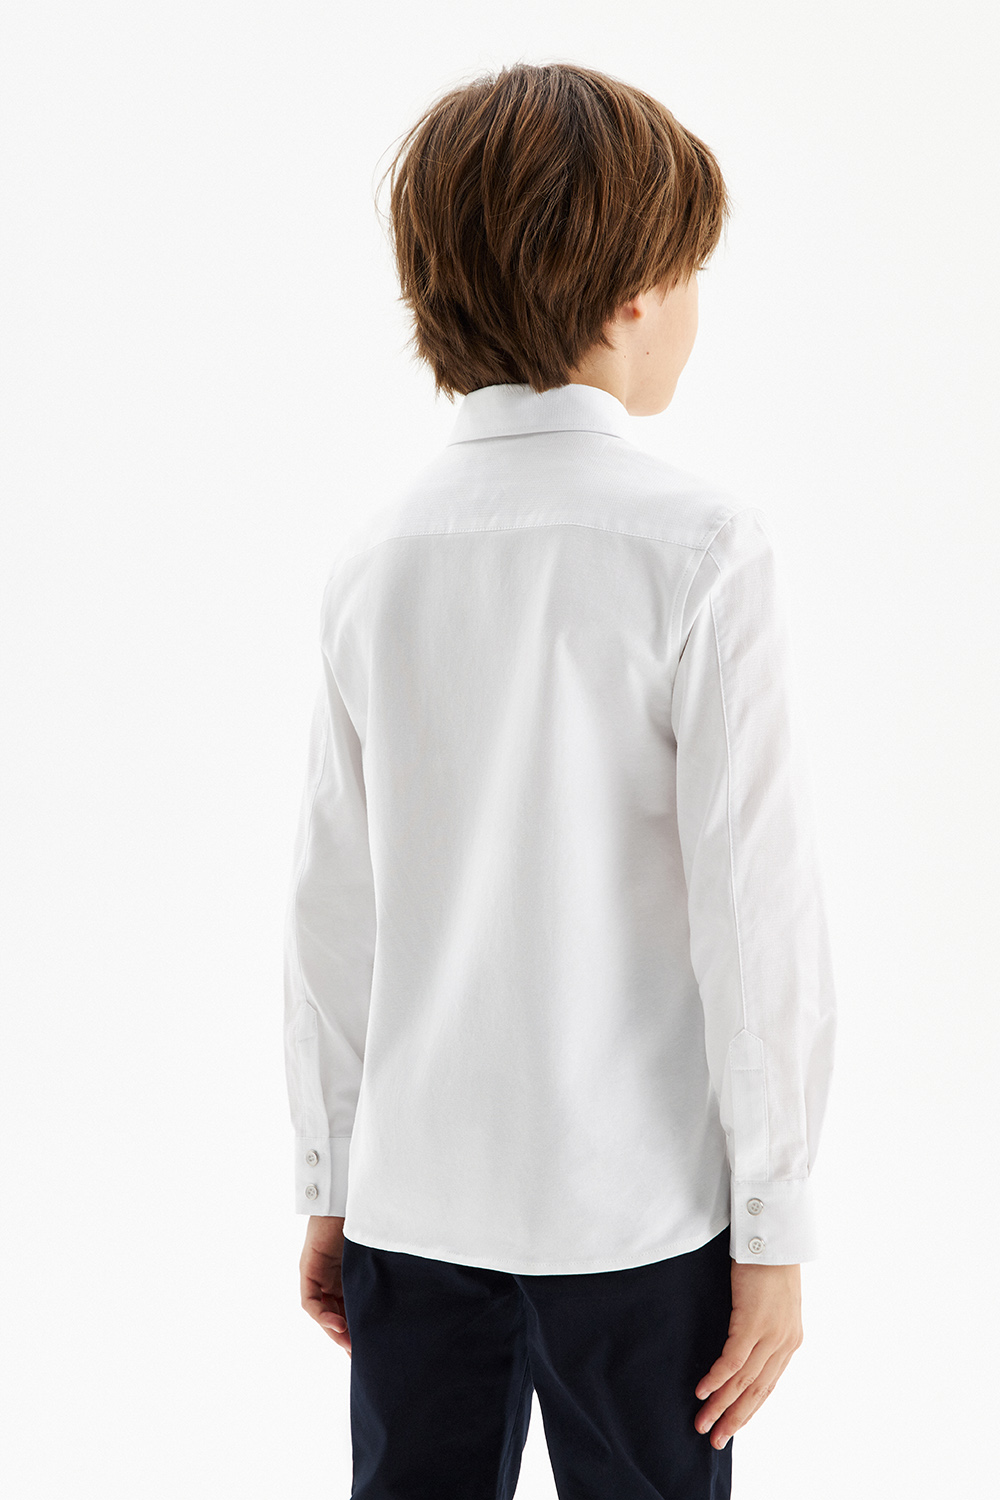 Сорочка хлопковая Comfort с трикотажной спинкой на кнопках (SSFSB-428-14855-219) Silver spoon